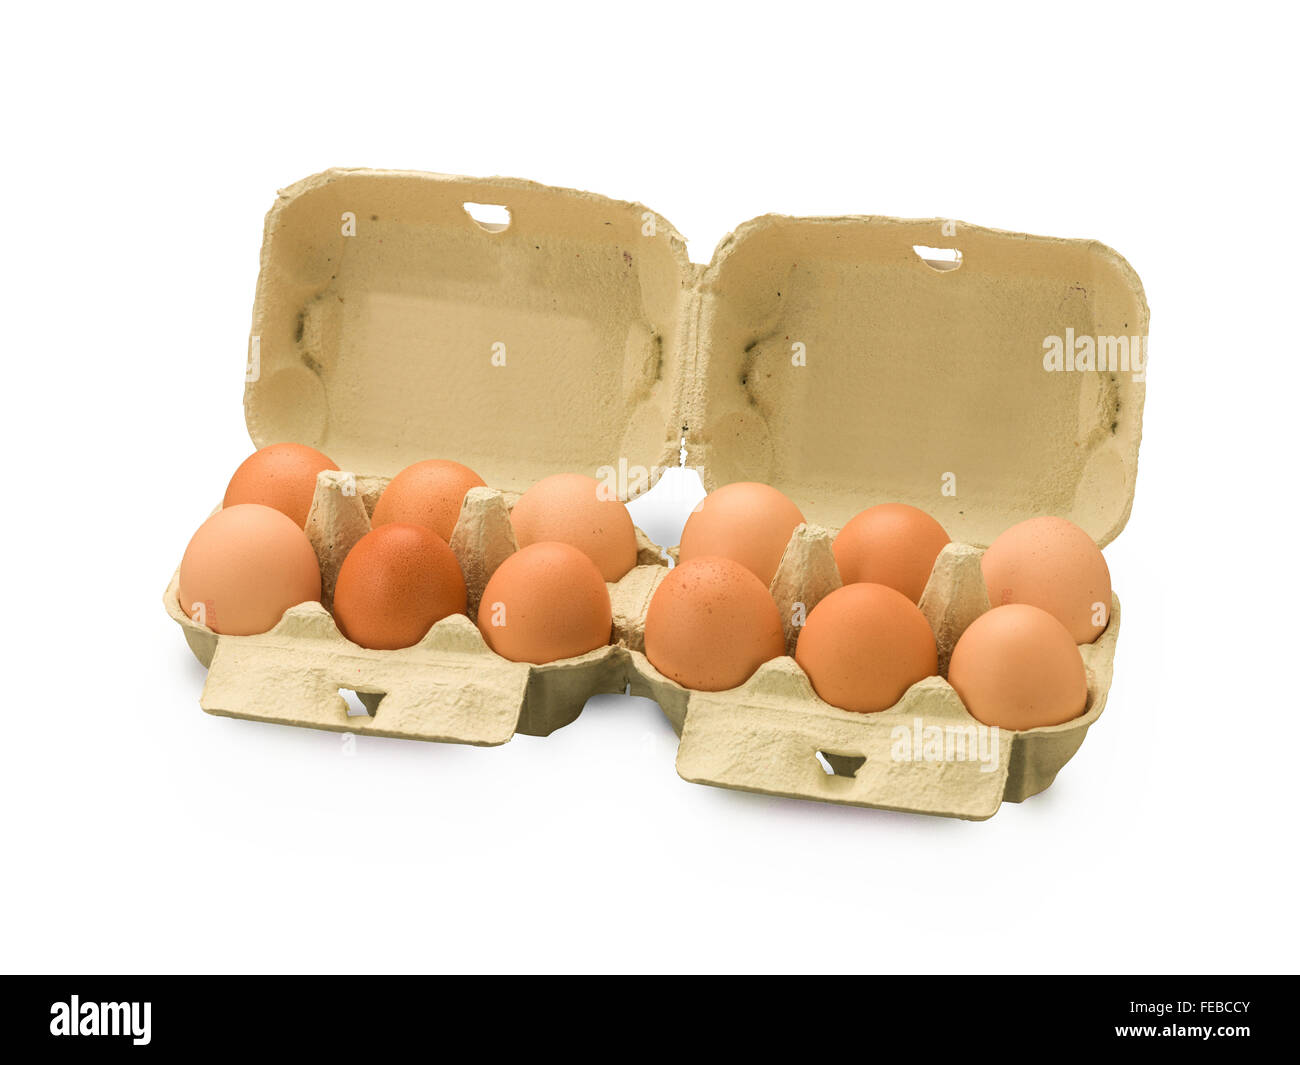 Boîte d'œufs biologiques avec une douzaine d'oeufs isolated on white Banque D'Images